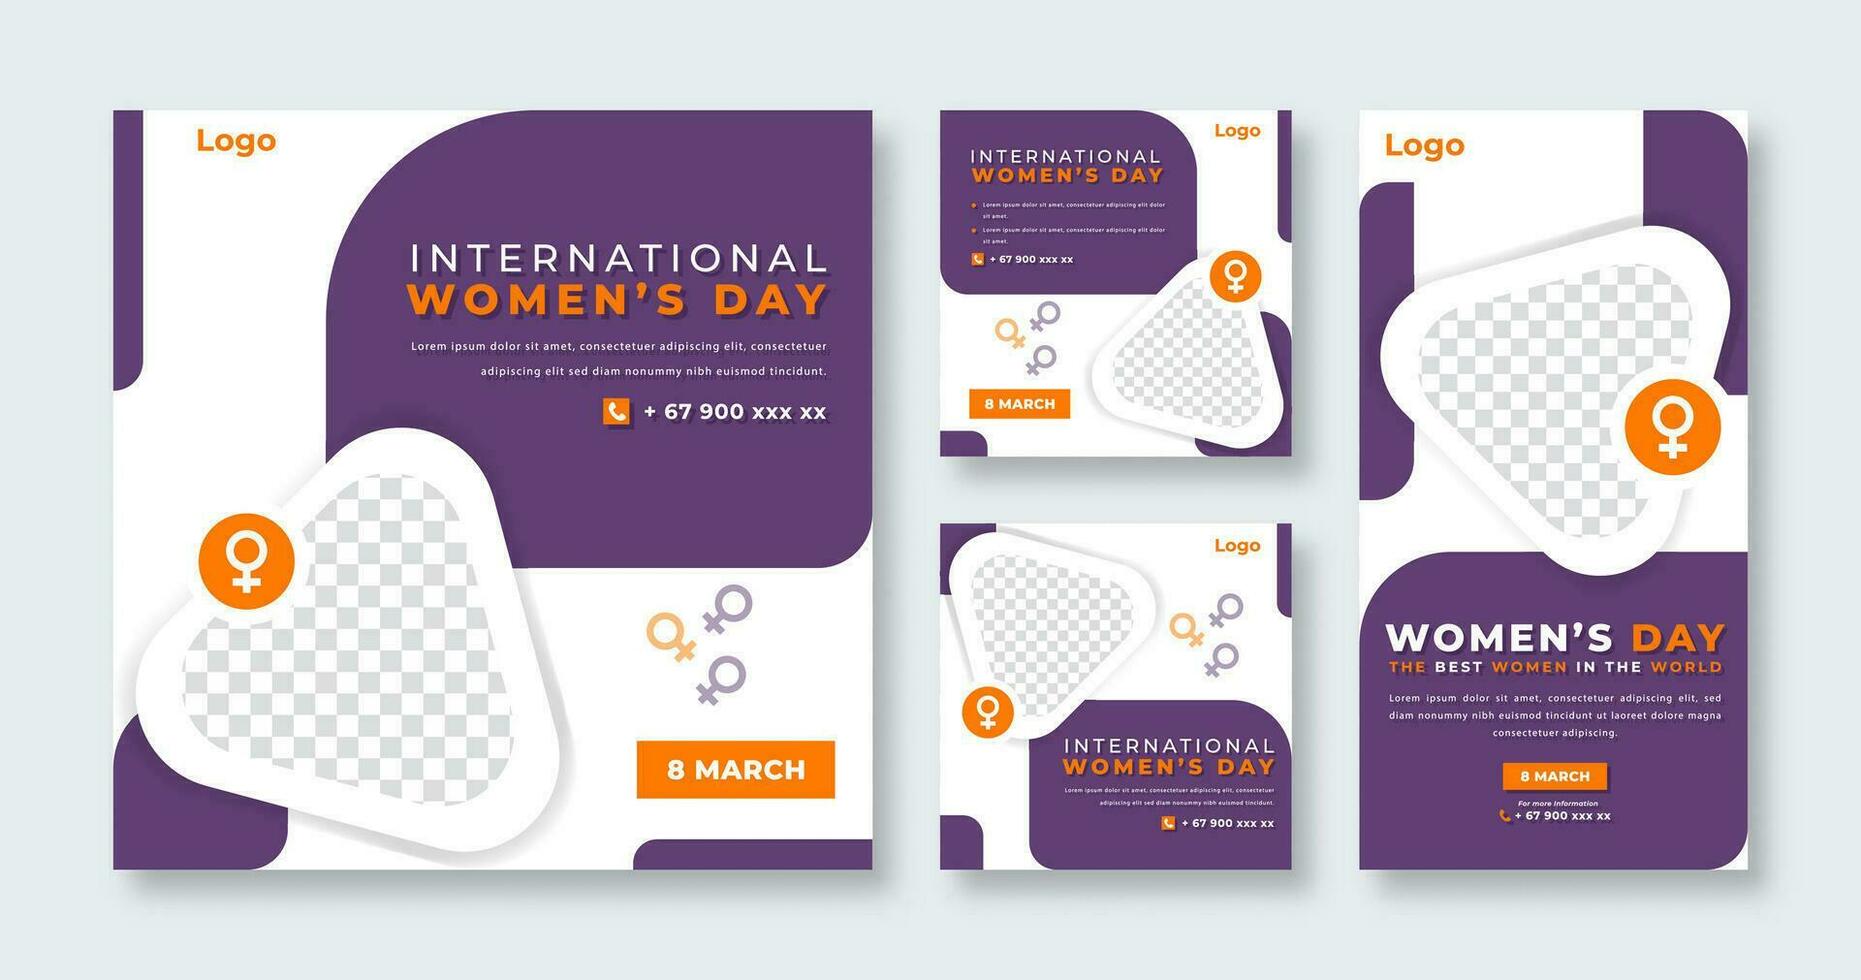 International Frauen Tag Sozial Medien Post zum online Marketing Beförderung Banner, Geschichte und Netz Internet Anzeigen Flyer vektor